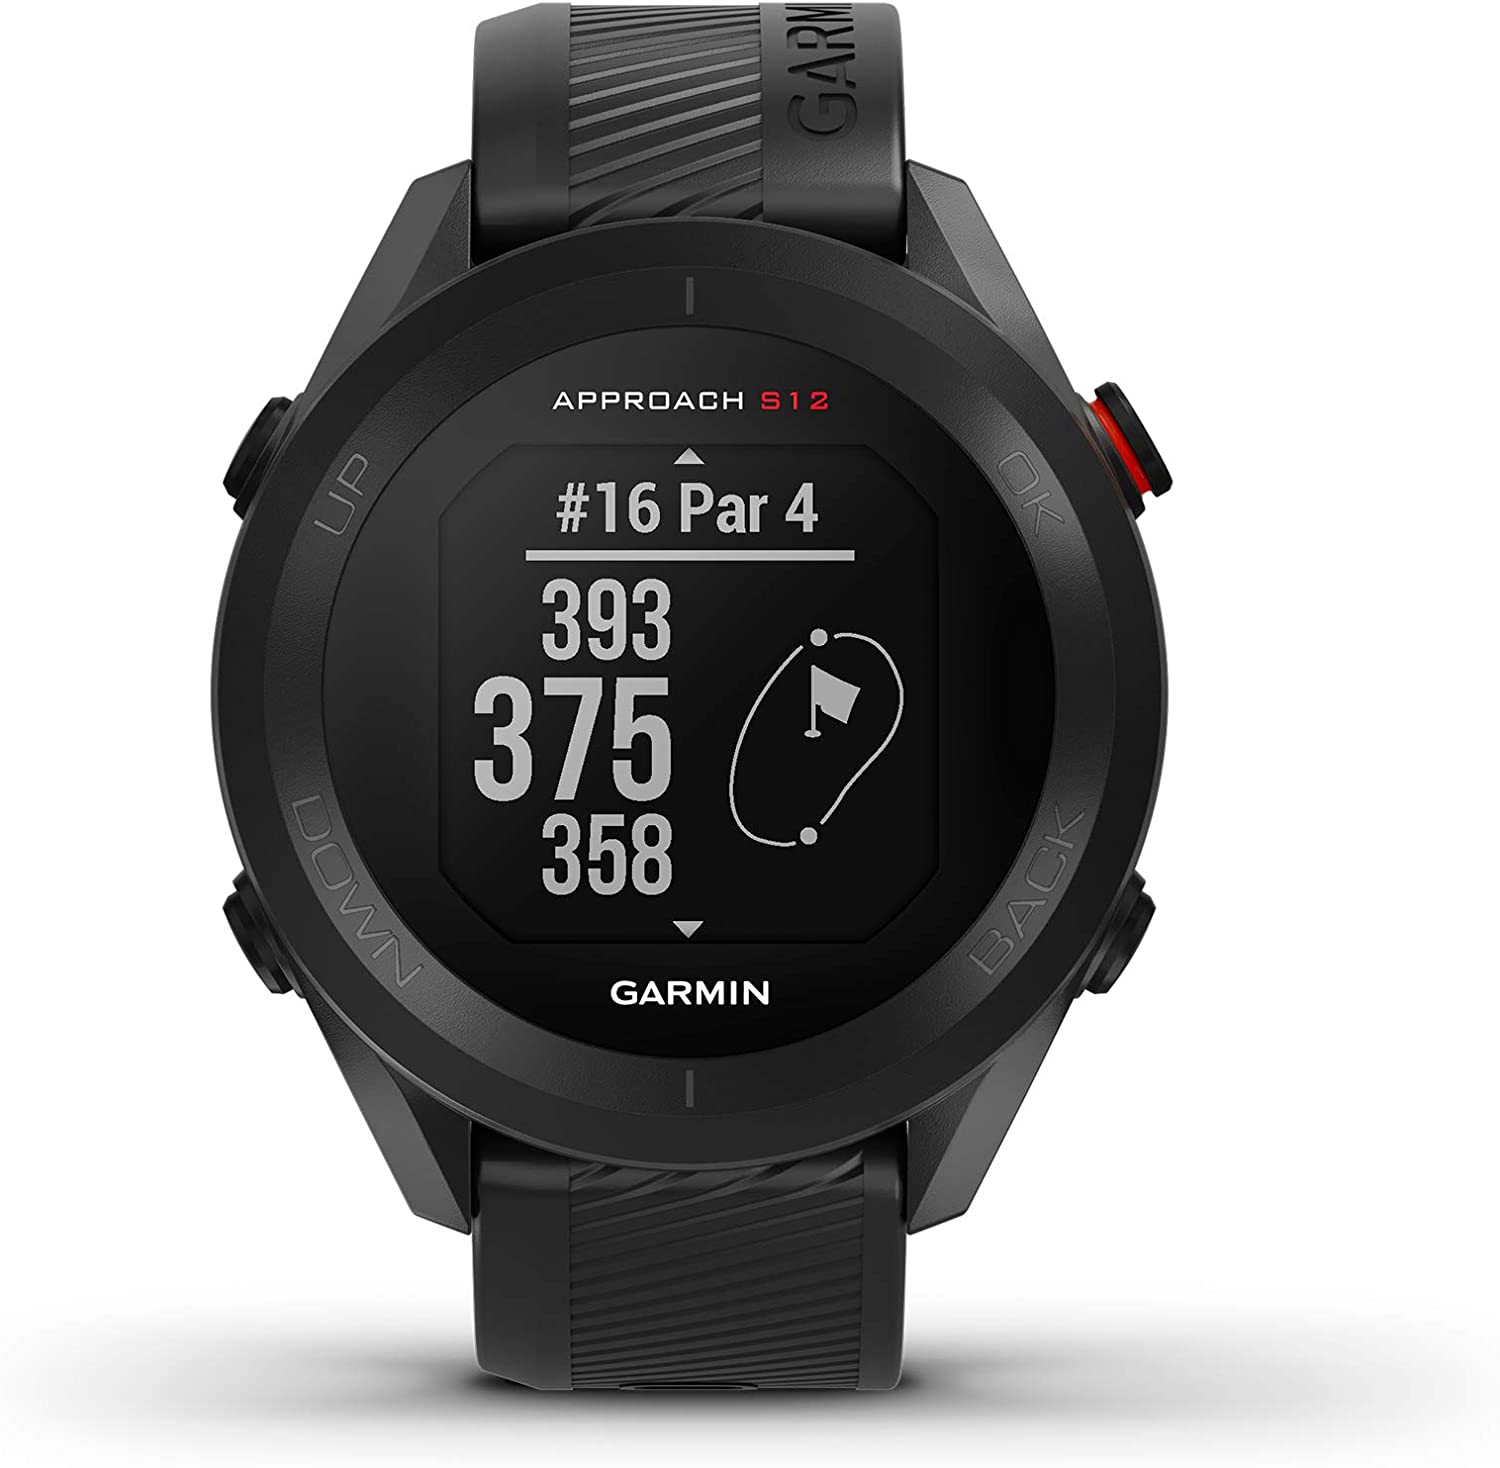 Garmin G010-N2472-00 Approach S12 42k+ Preloaded Courses GPS Golf Watch Black - Certified Refurbished